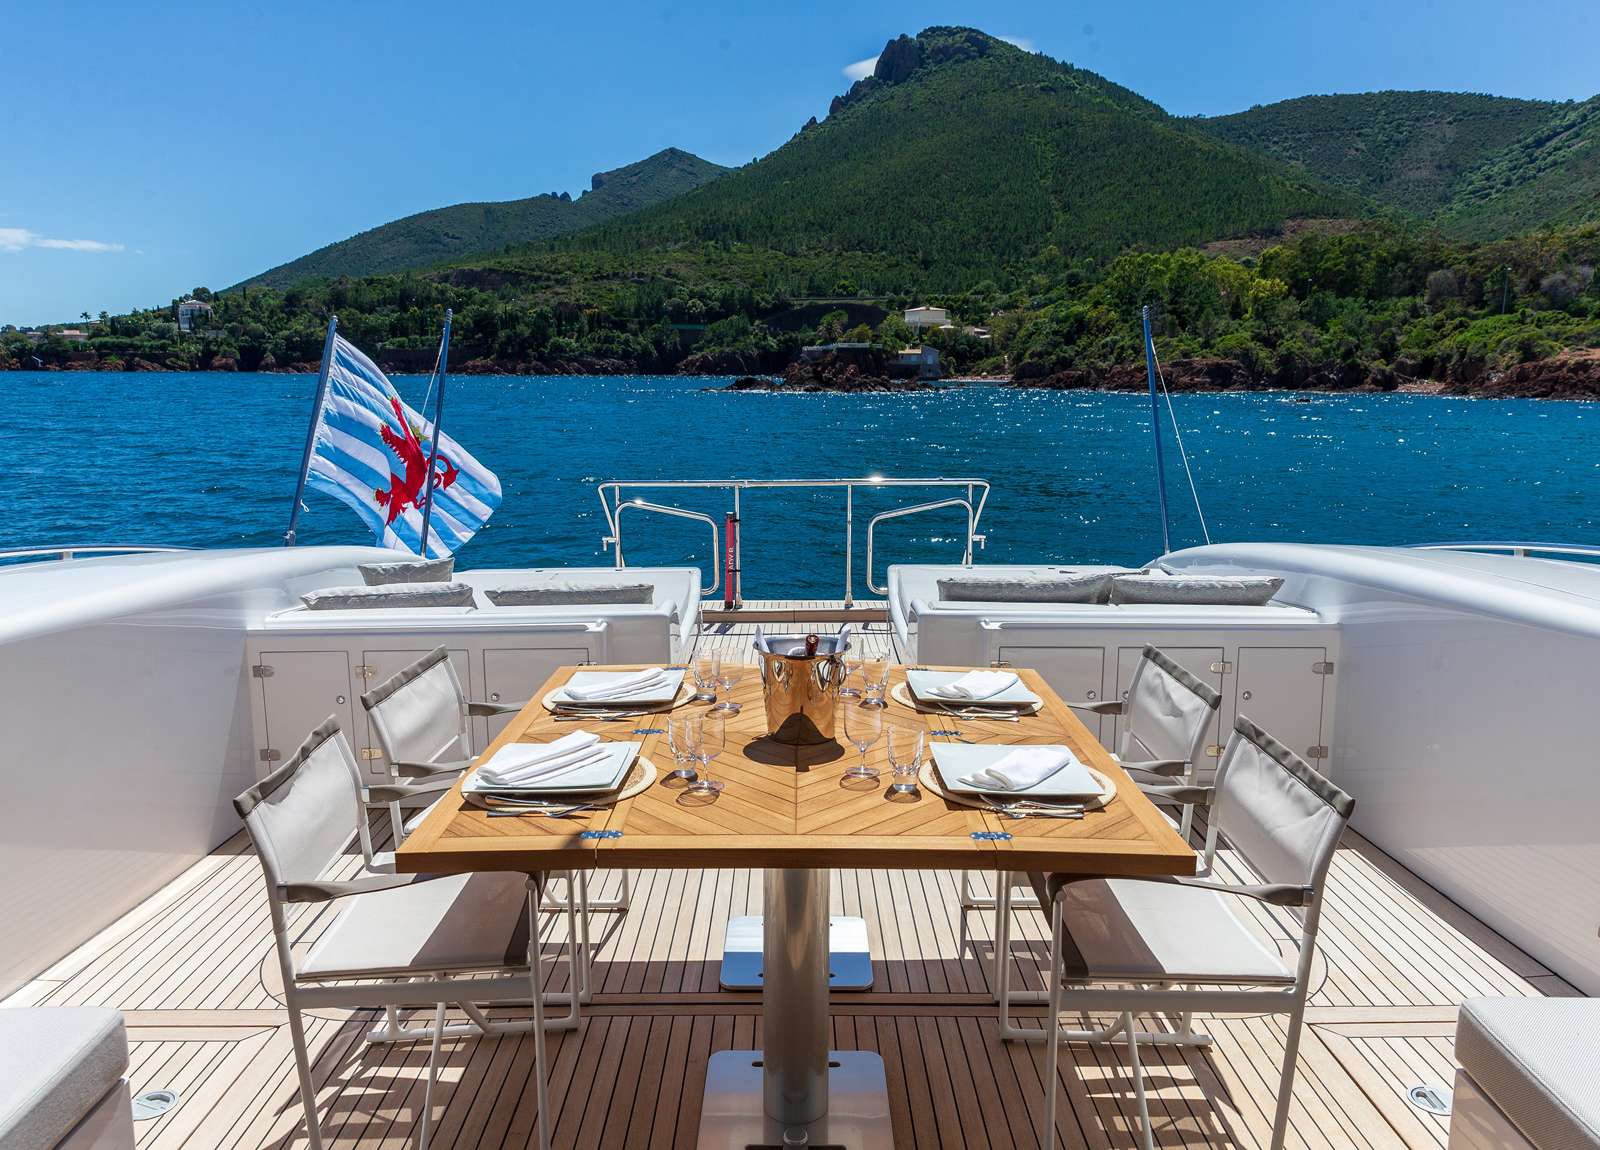 upperdeck luxury yacht mangusta 108 lady b western mediterranean